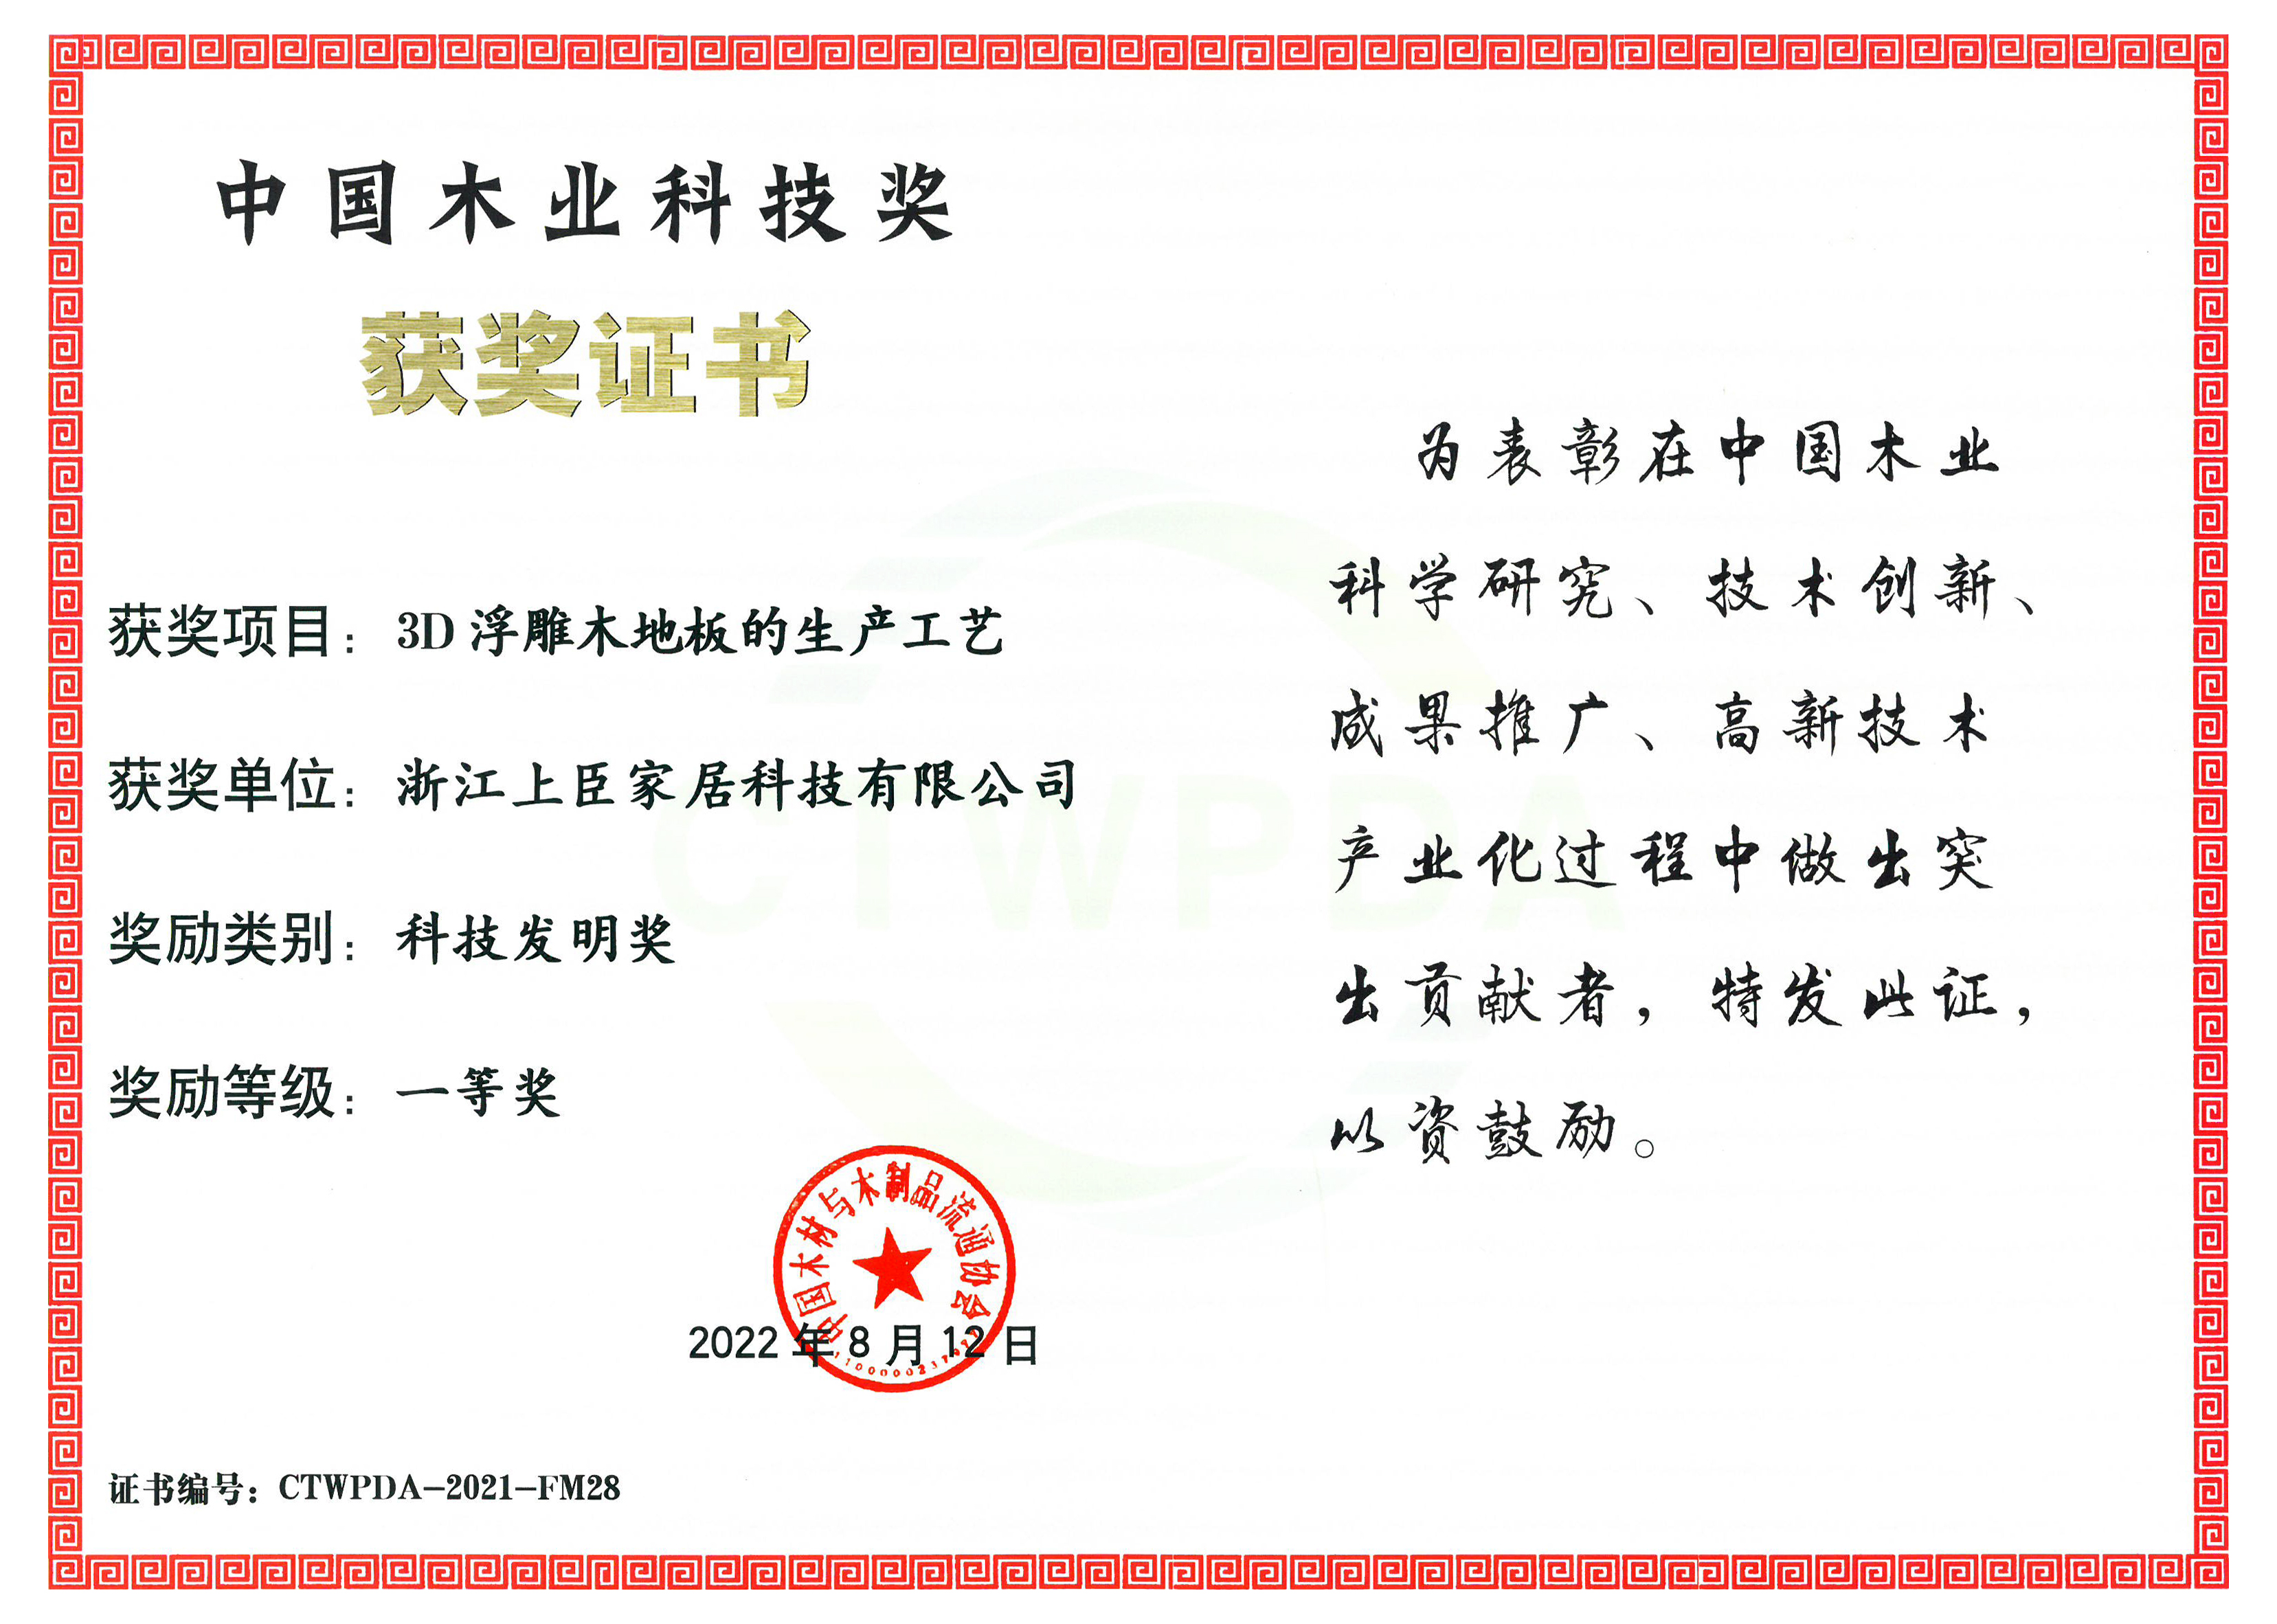 中国木业科技奖